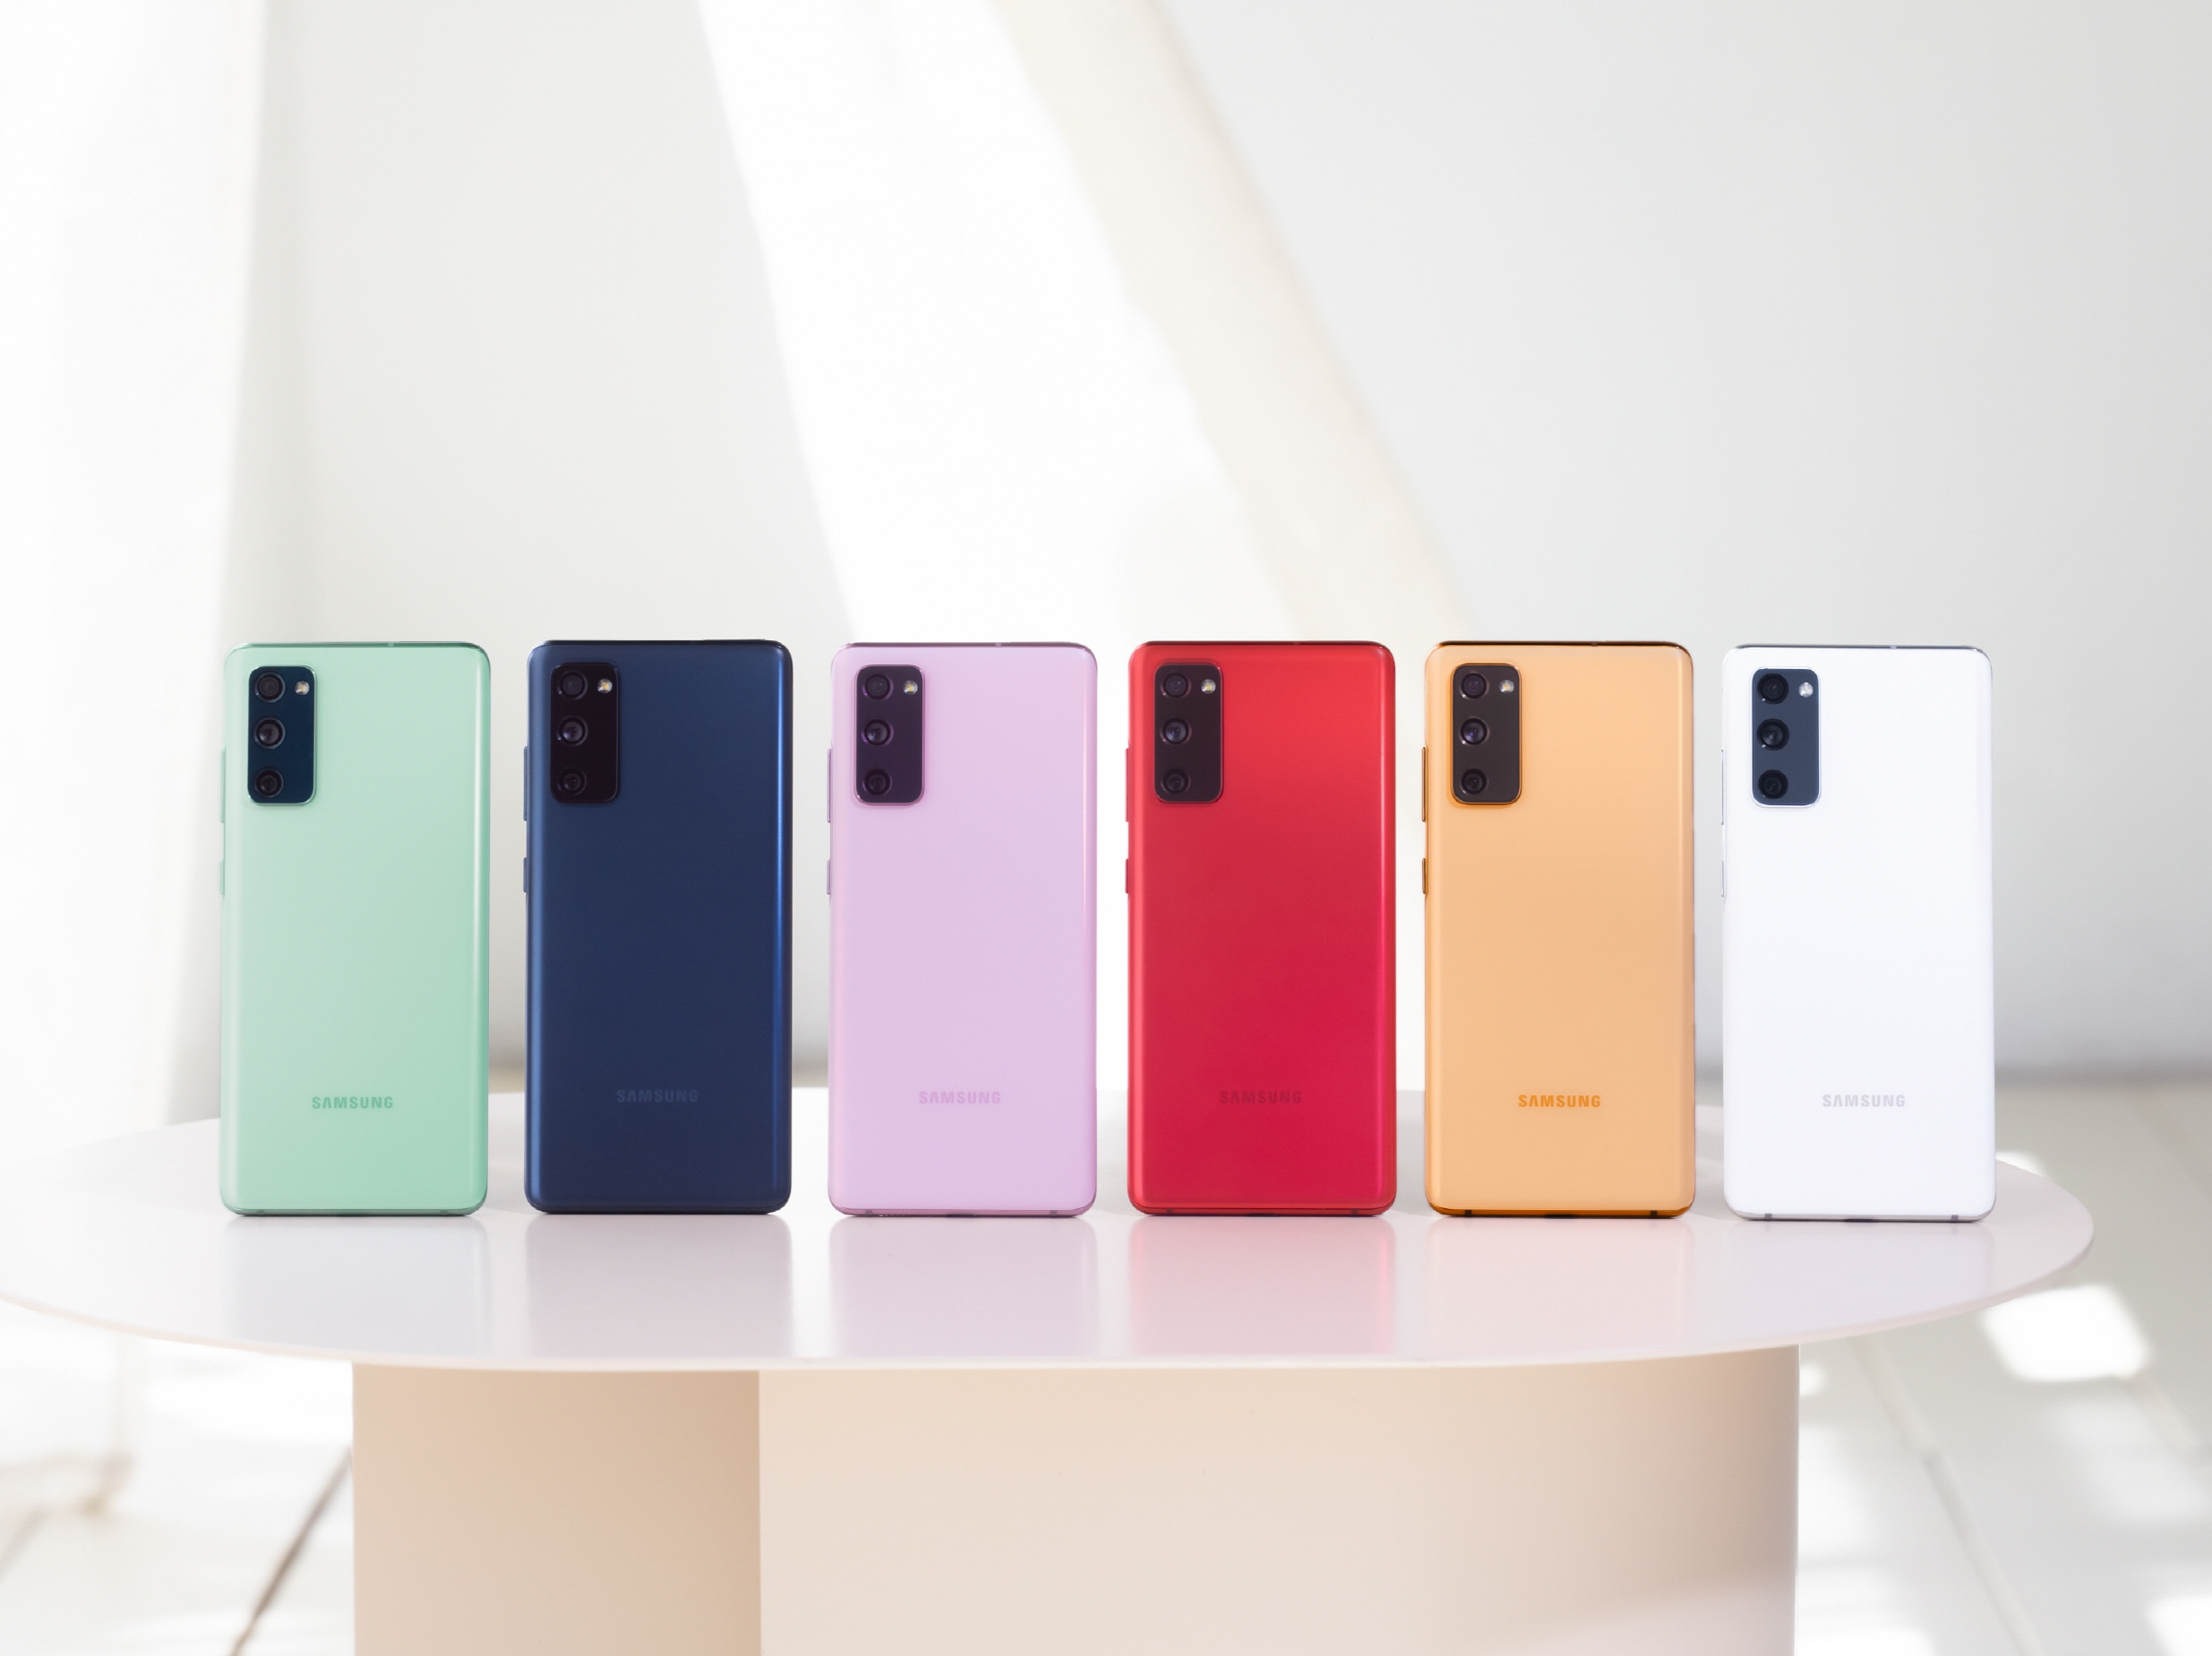 O Samsung Galaxy S20 FE estará disponível em seis cores